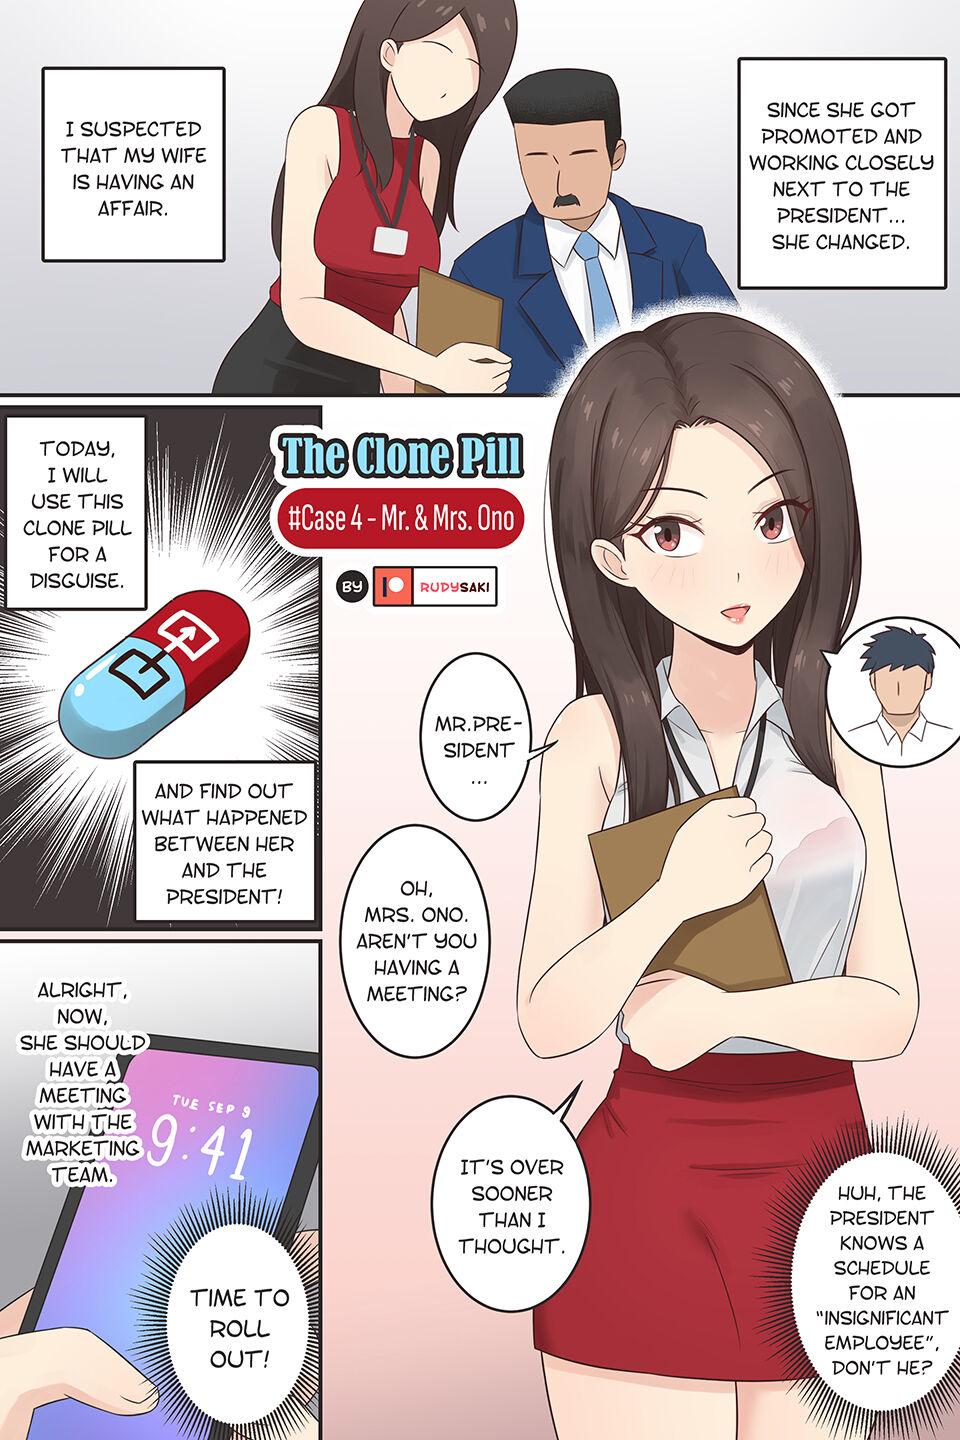 The Clone Pill Case.4 - Mr.&Mrs.Ono 0